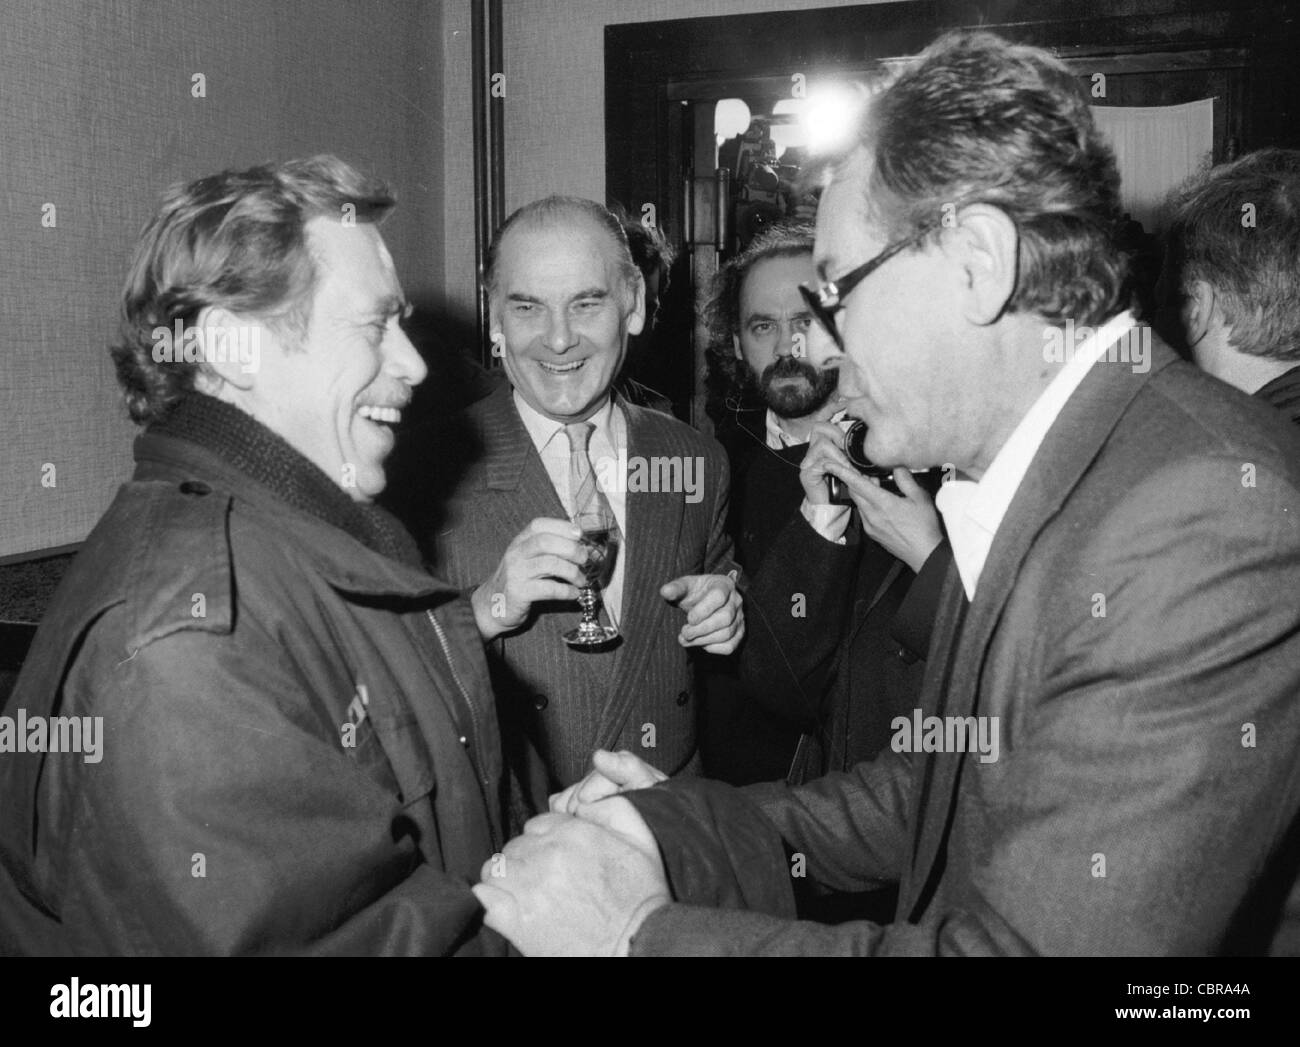 Civic Forum Führung Vaclav Havel, links, trifft seinen langjährigen Freund Milos Forman, Tschechische Oscar-prämierten Regisseur, bei der Stockfoto